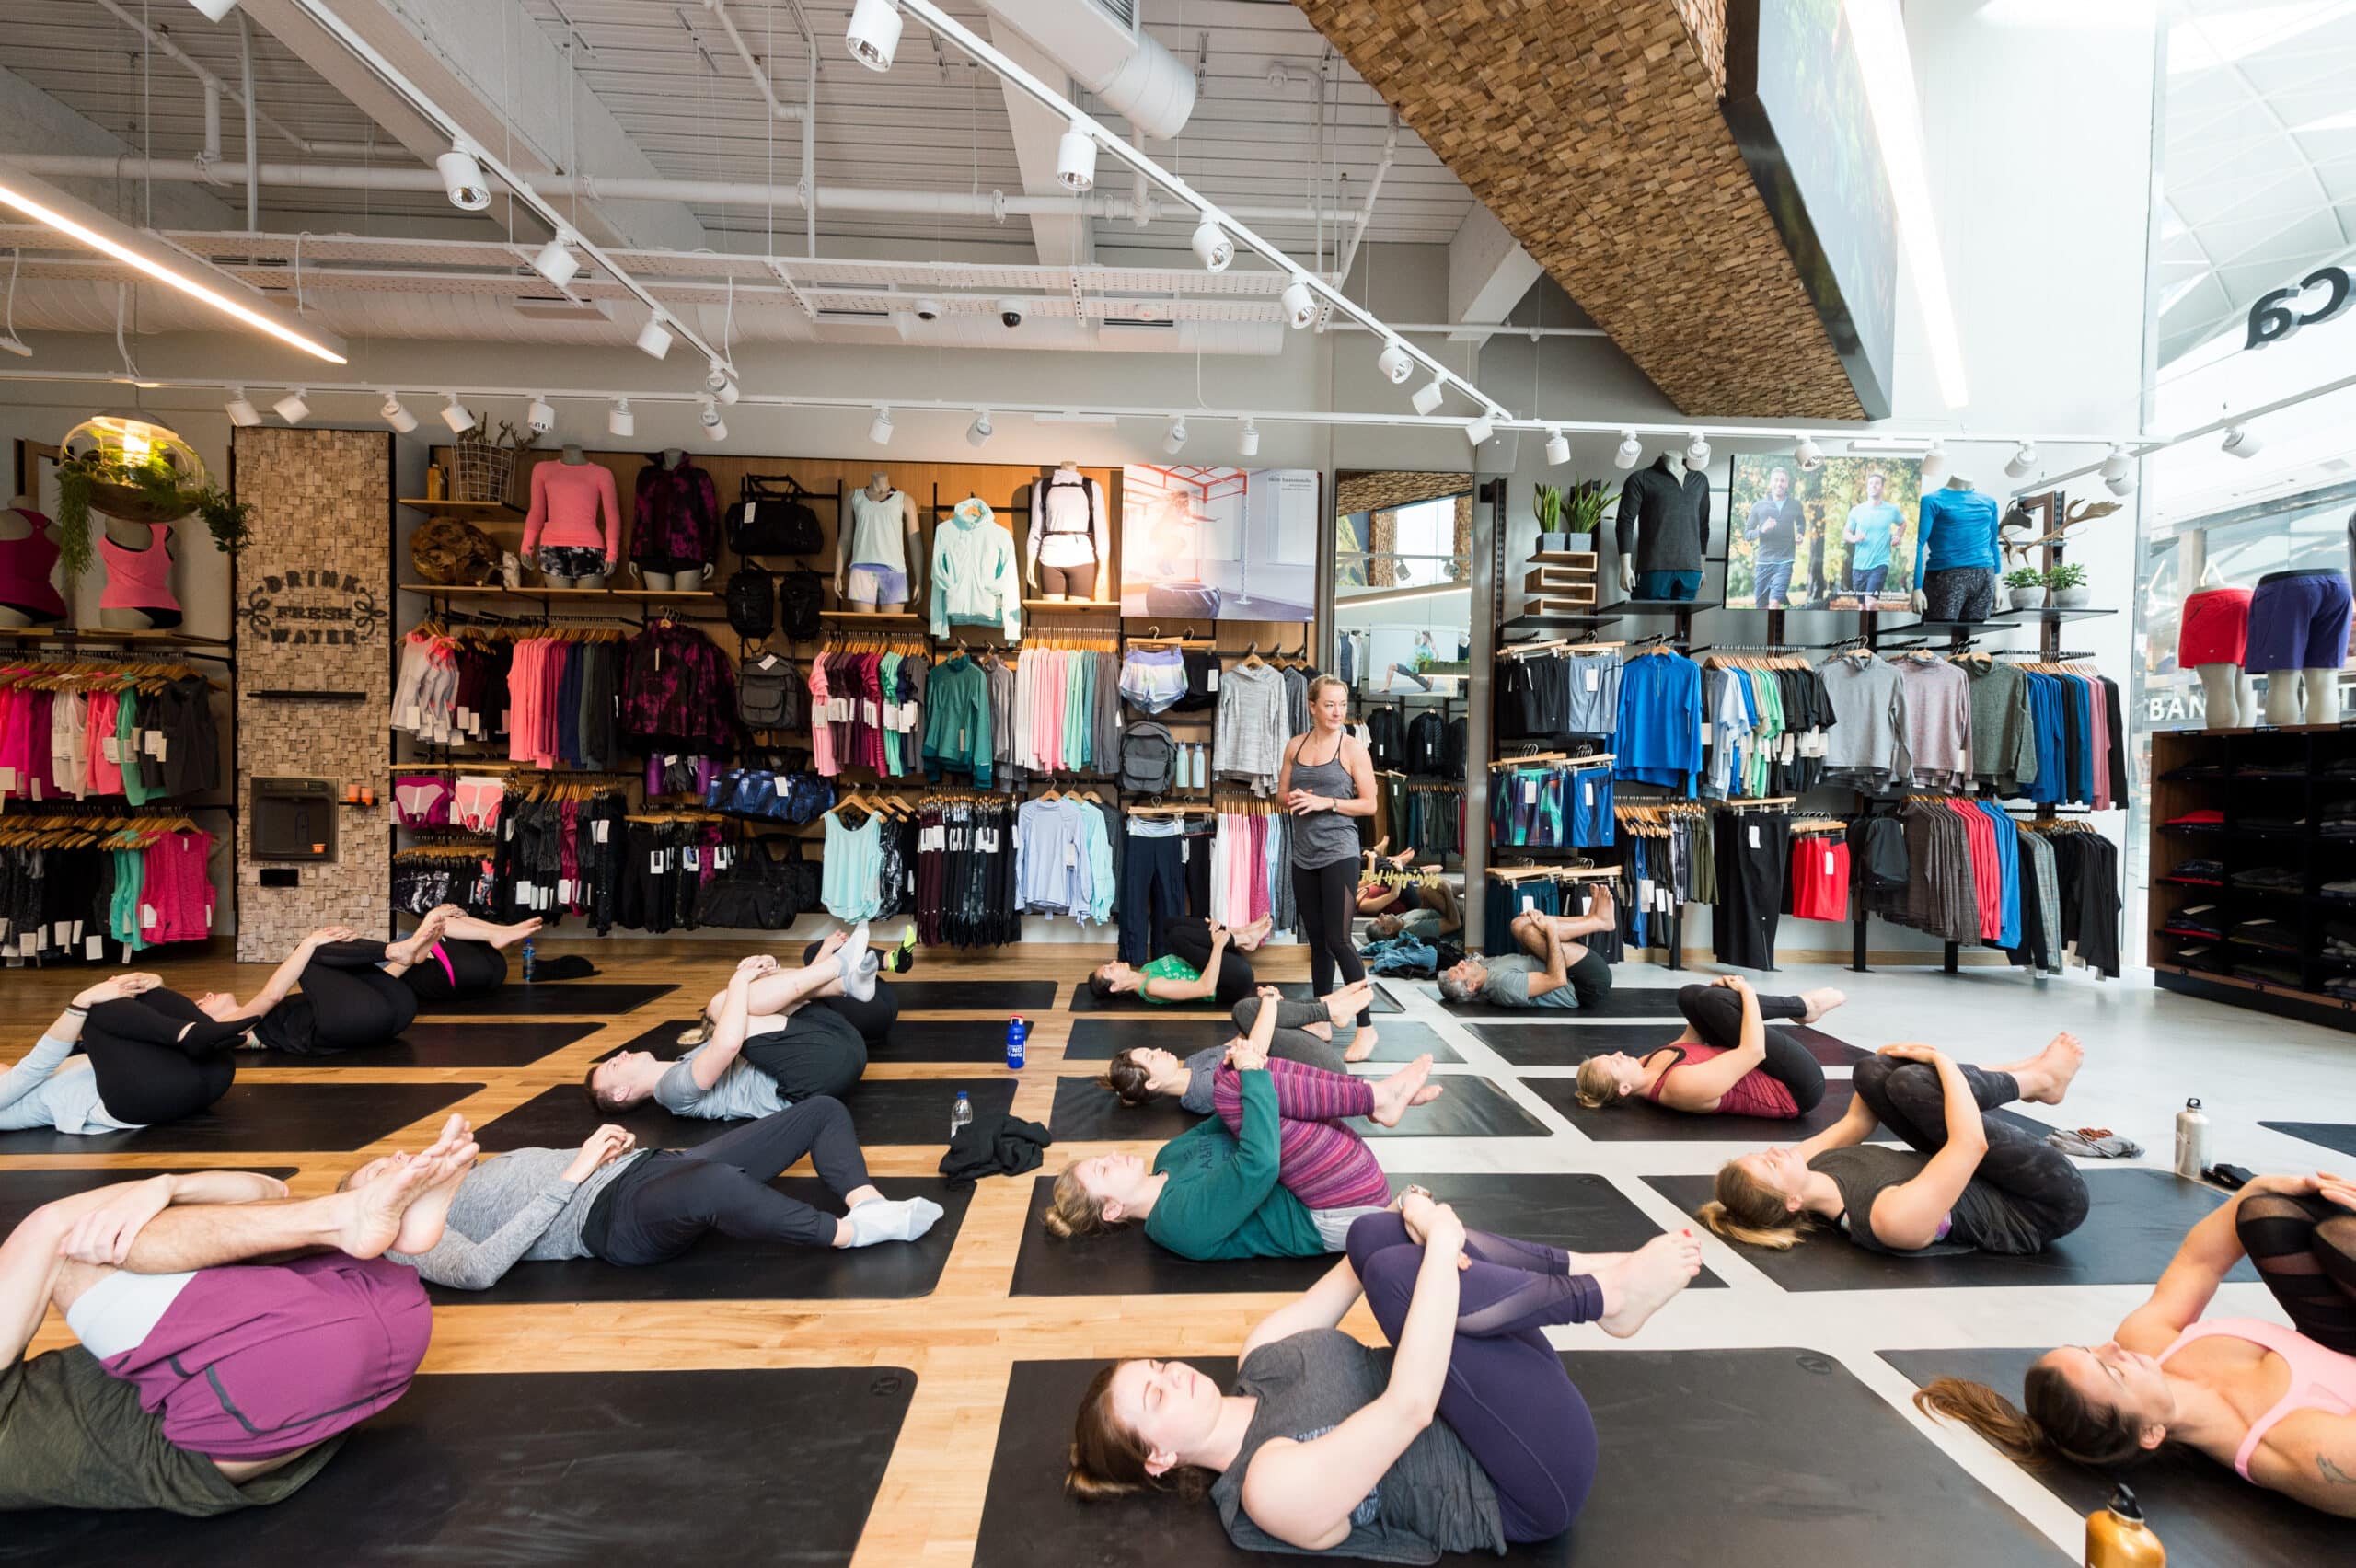 pretty retail yoga shop - Google Search